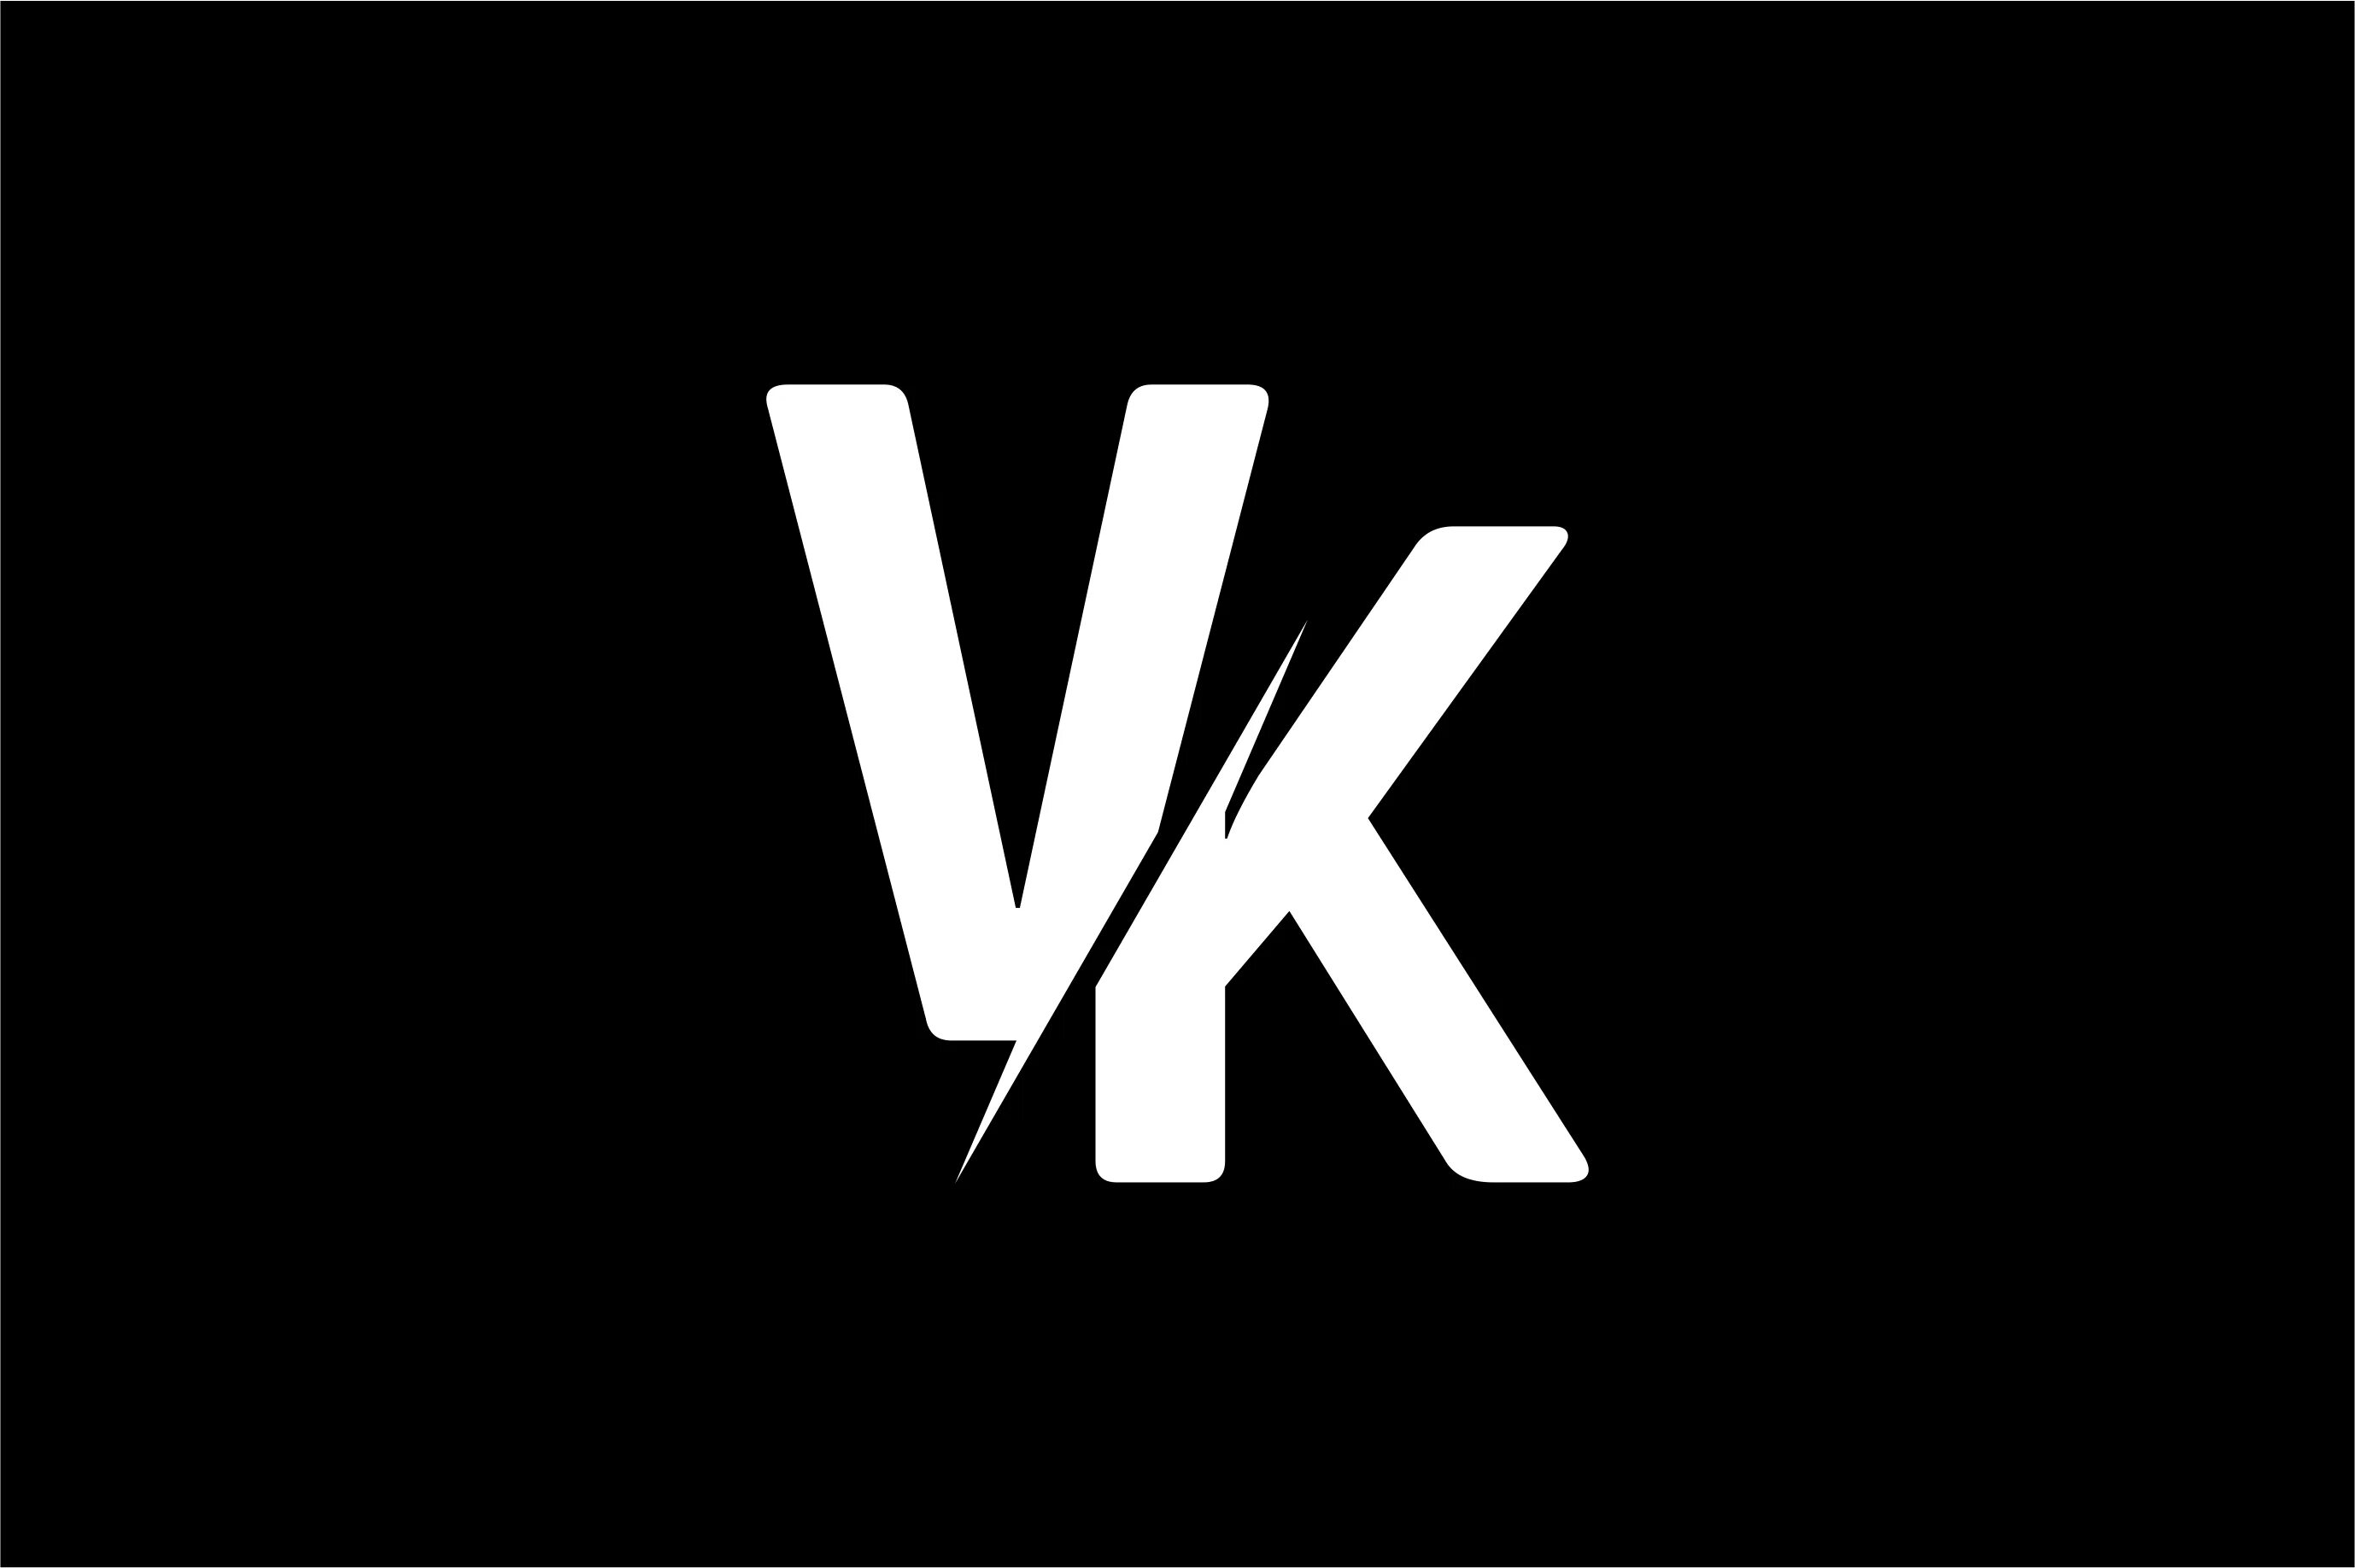 Логотип вк черный. Логотип ВК. Логотип ВК чб. Логотип ВК на черном фоне. Логотип v.